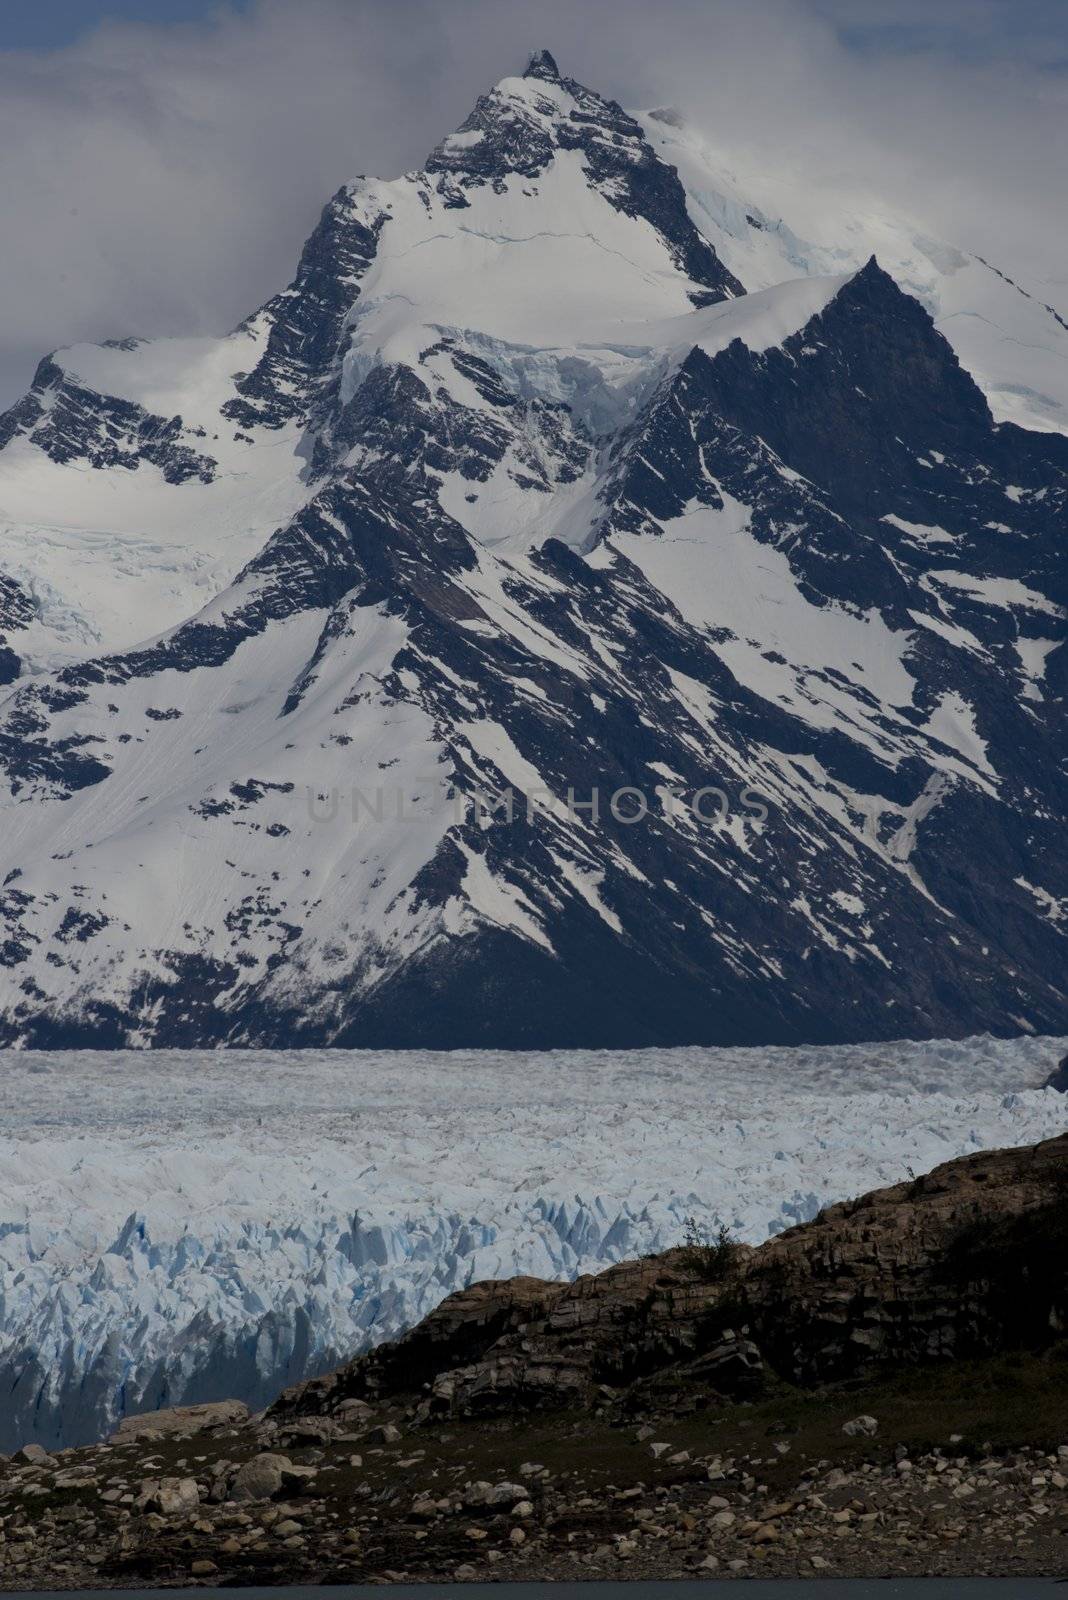 Glacier Perito Moreno by faabi